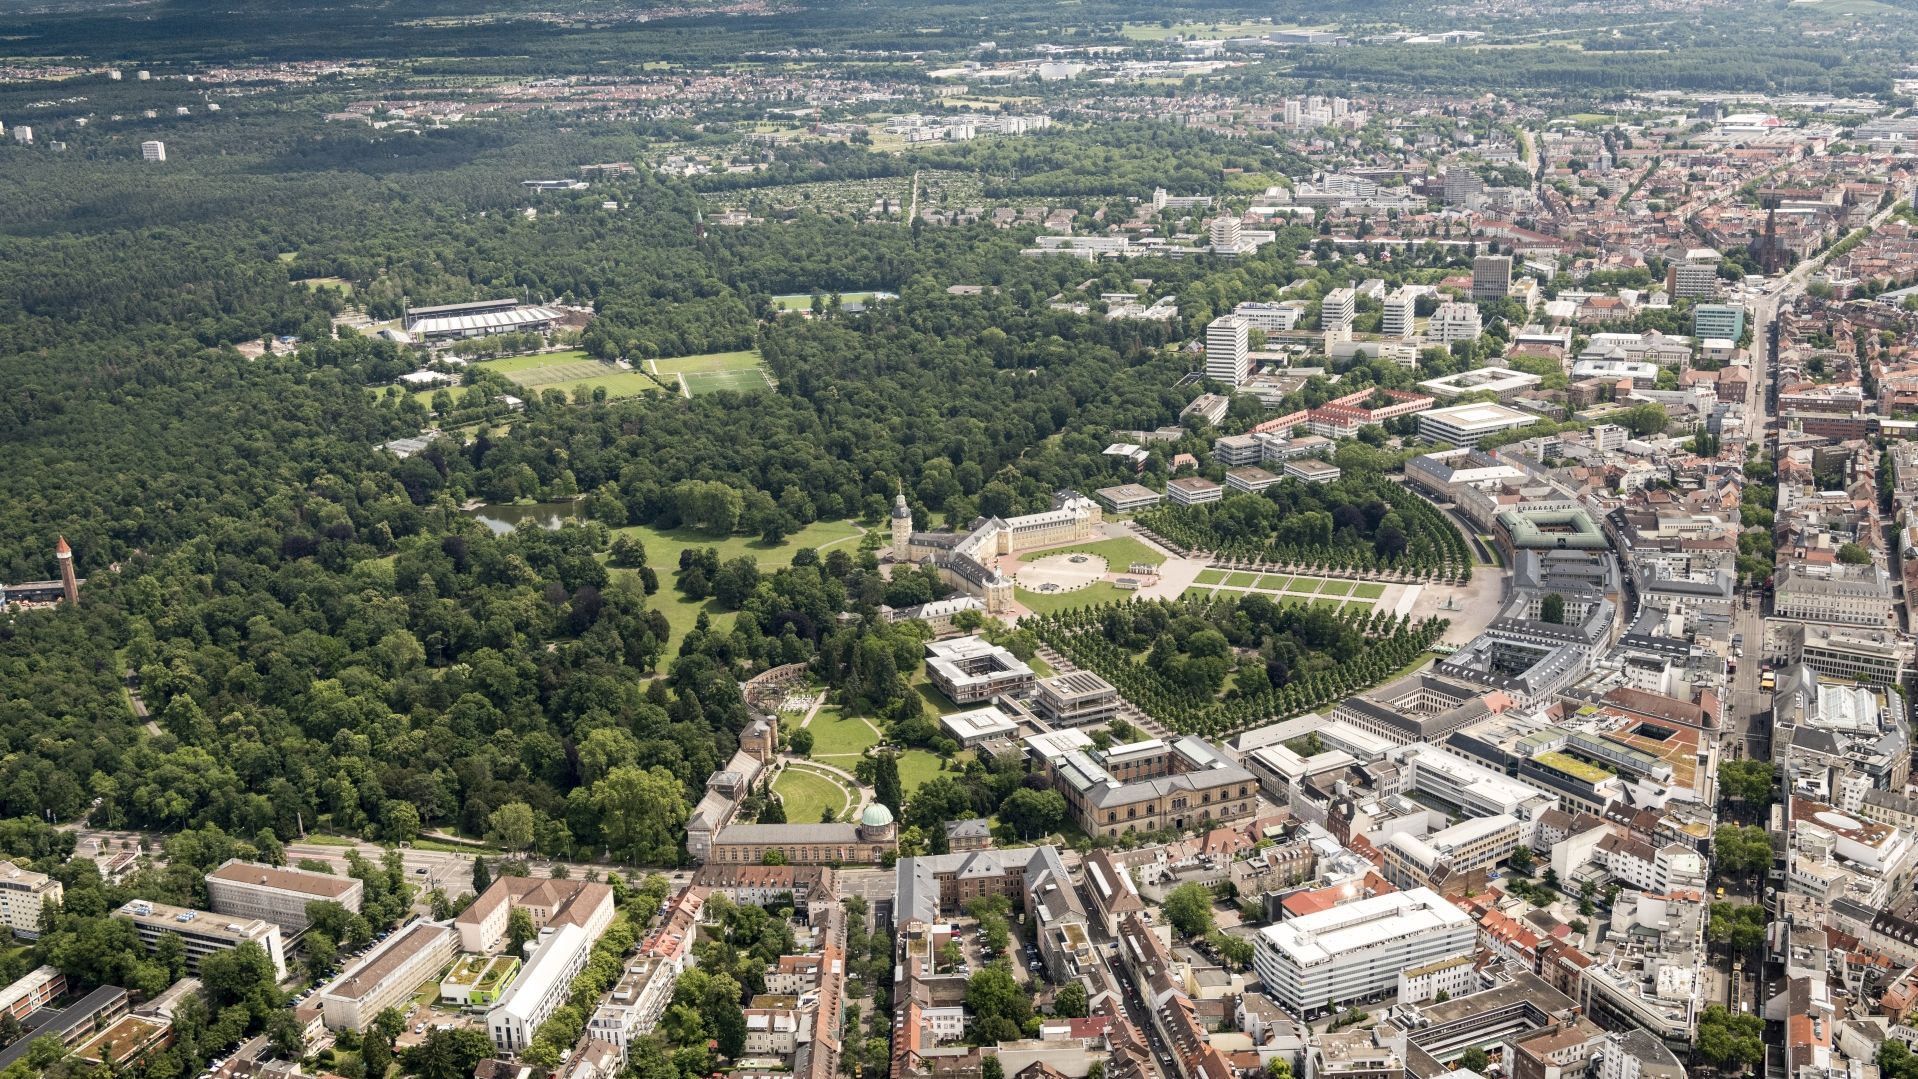 Die Stadt Karlsruhe mit Stadtwald im bebauten und straßennahen Bereich wie Friedhöfen, Parks, Gärten oder Höfen sowie periurbanem Wald im stadtnahen Naturraum. 